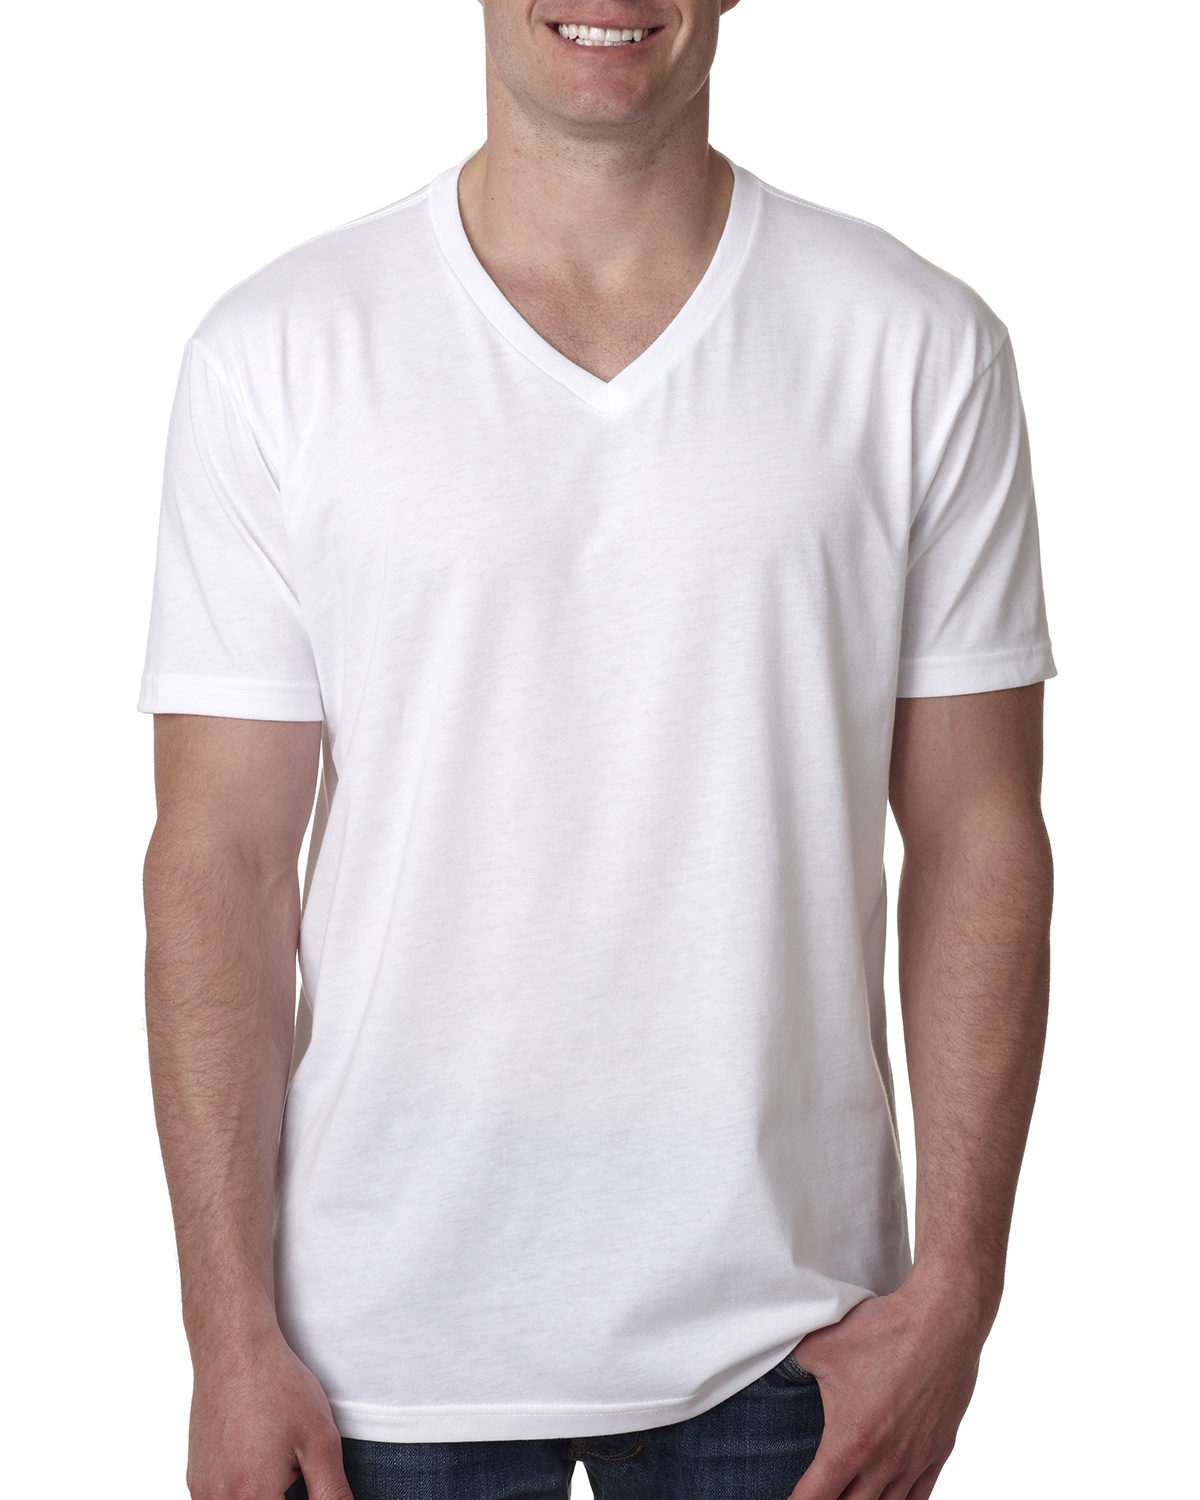 Next 6240 Unisex V-Neck T-Shirt |